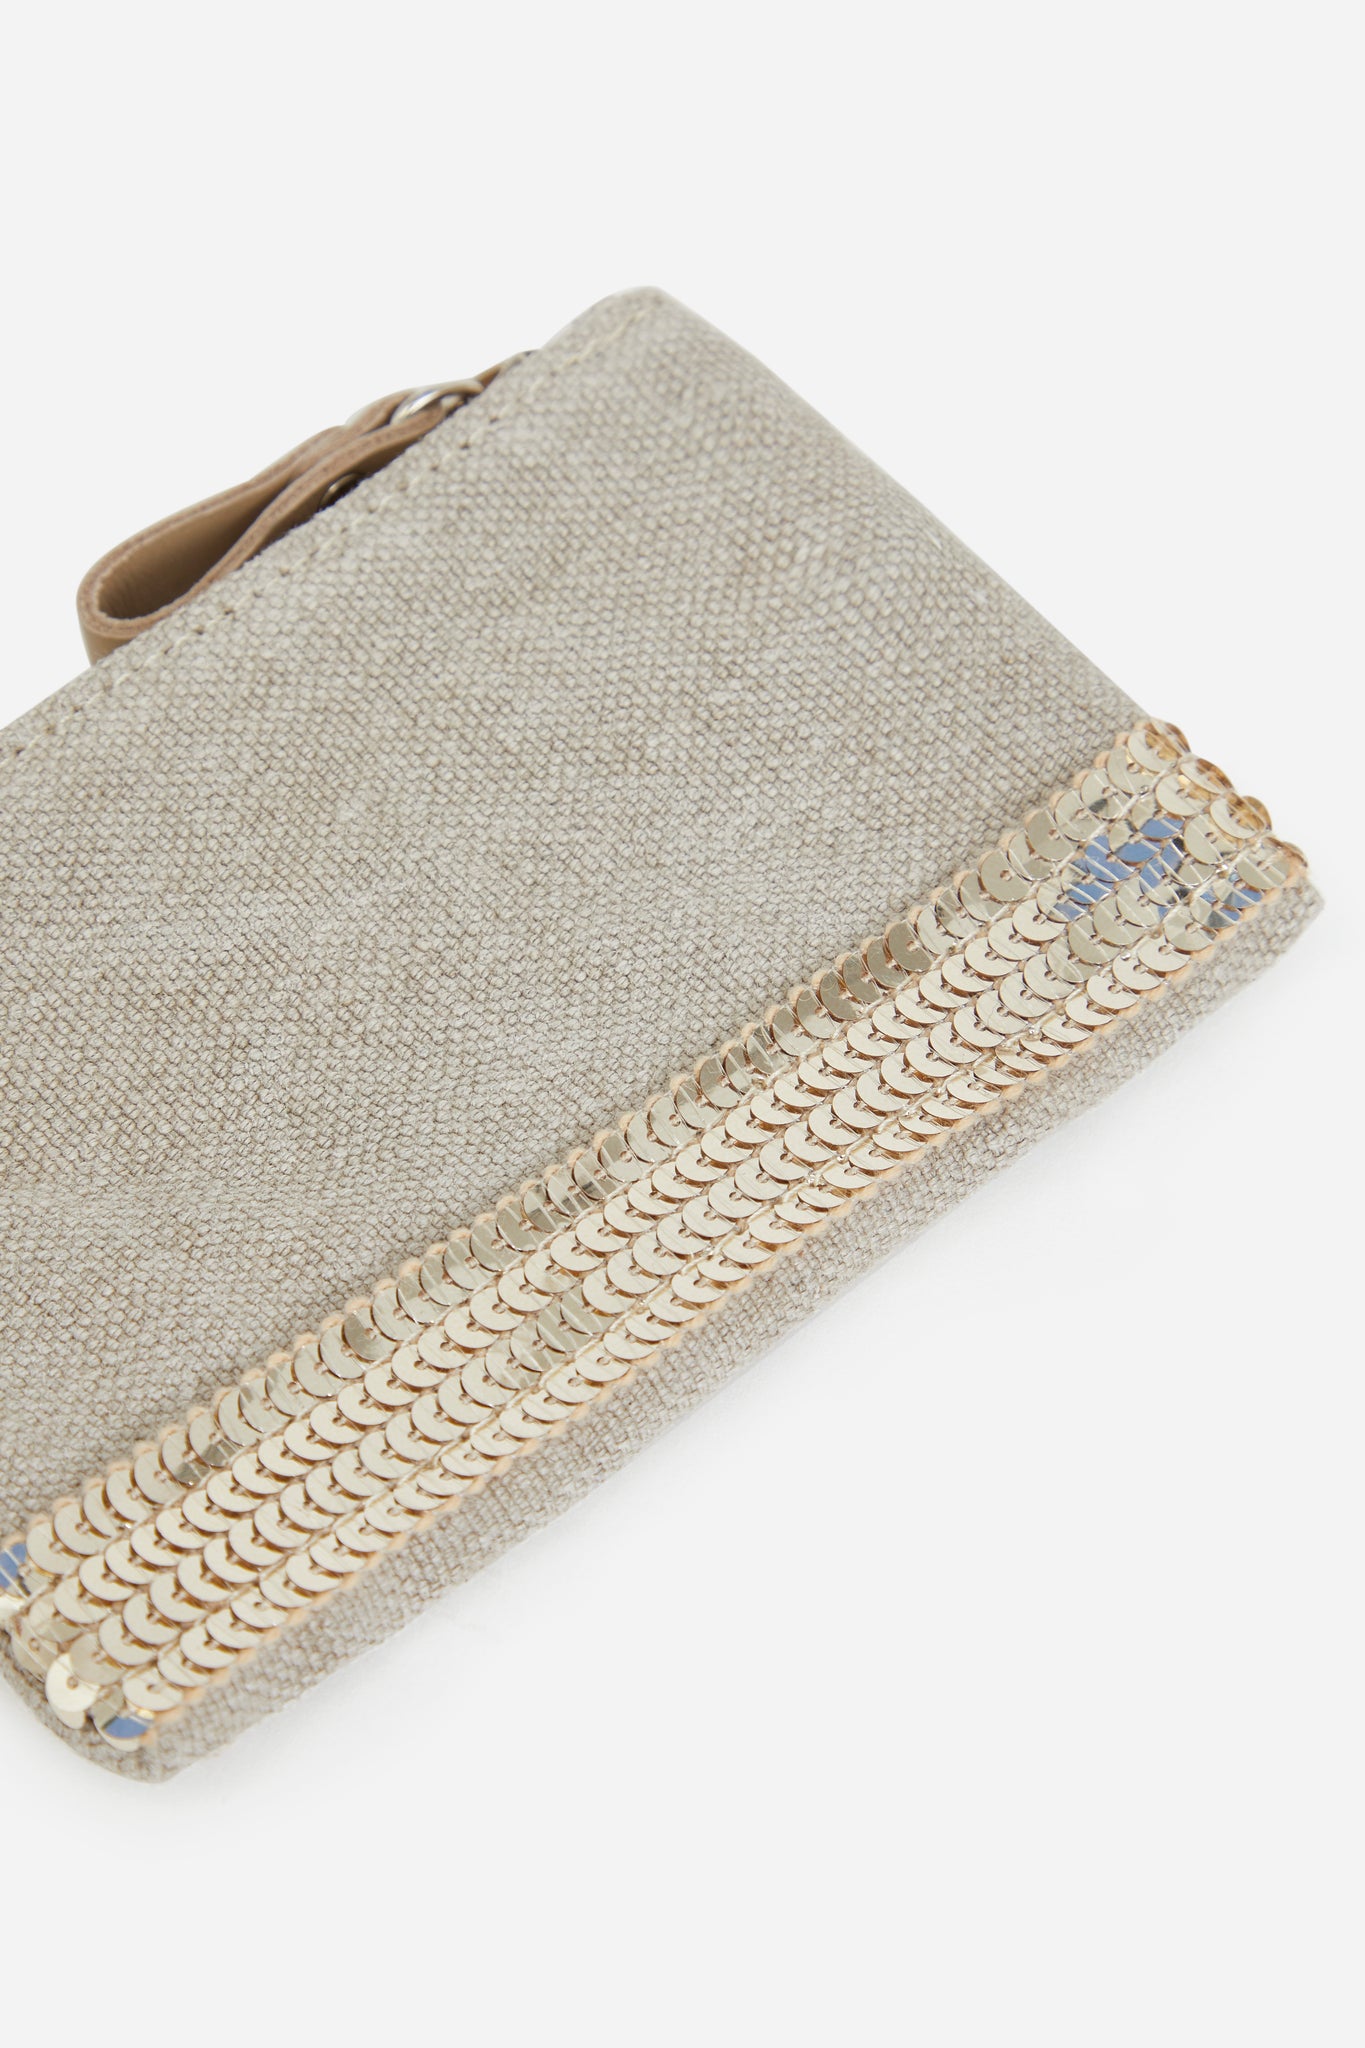 Pencil case, linen - sand